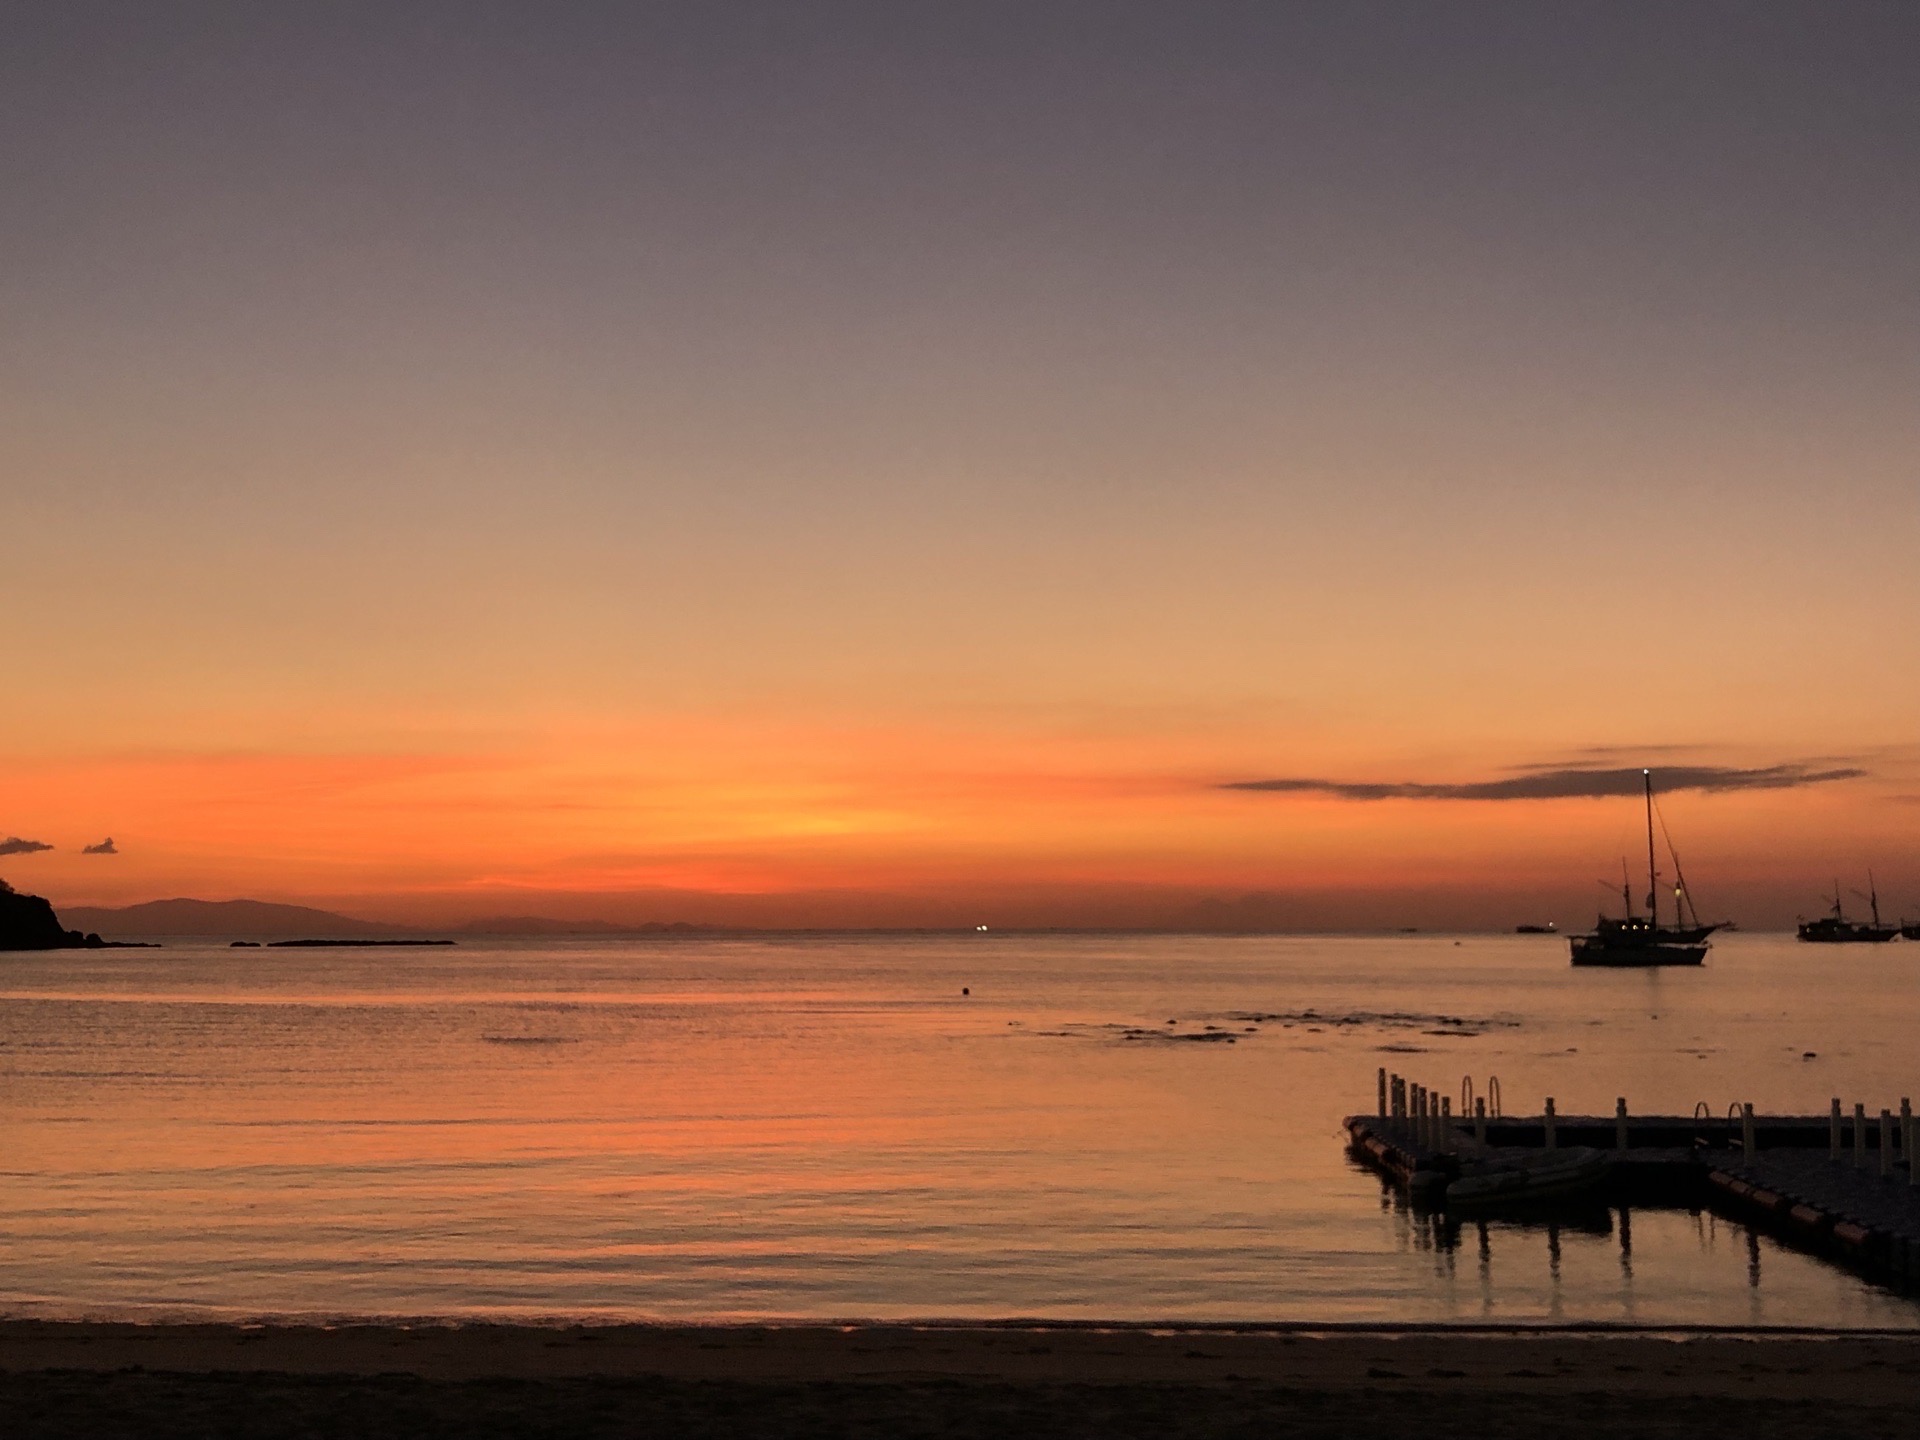 科莫多岛上的日落，金黄色的余晖洒落在海平面和沙滩上，皮划艇缓缓划过海面，那一刻美到极致。科莫多岛的粉